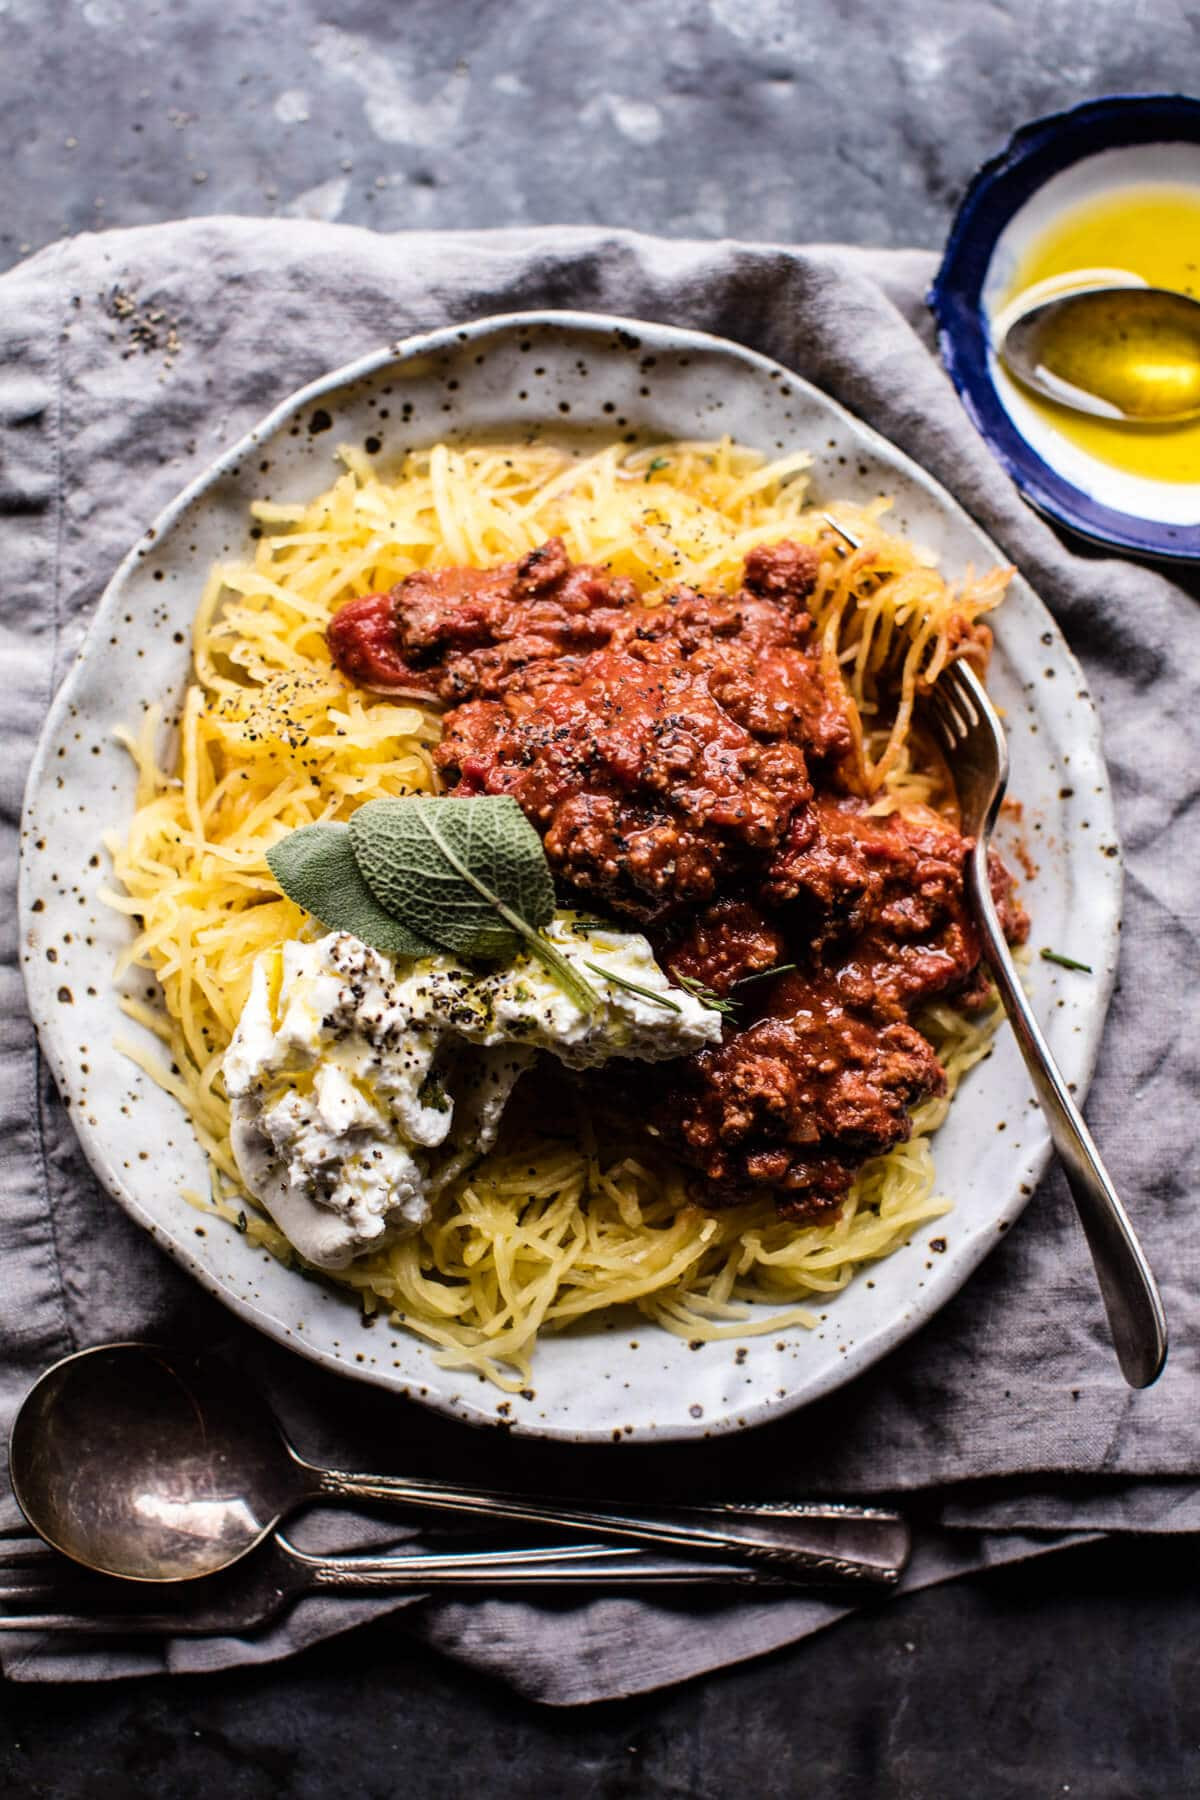 Low Carb Spaghetti Squash Recipes
 14 Low Carb Spaghetti Squash Recipes to Keep You Slim